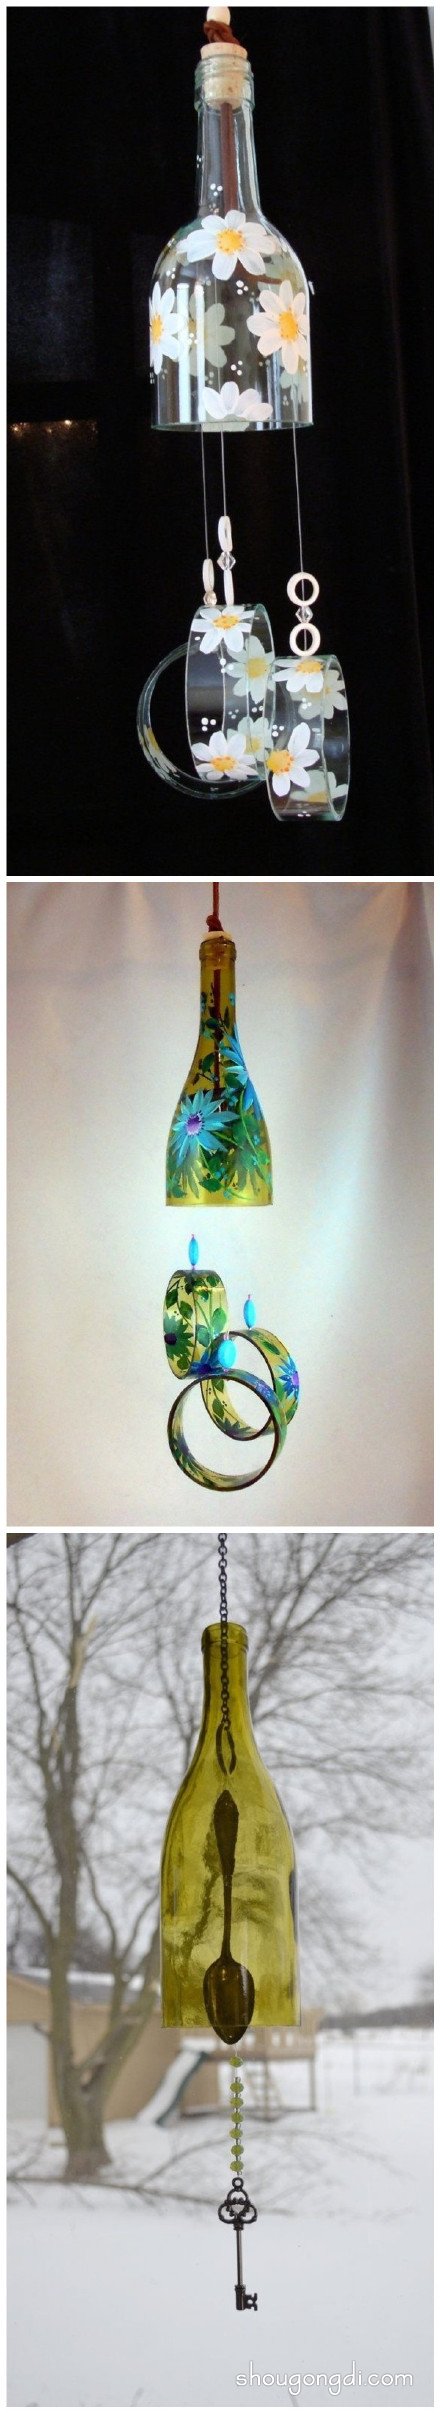 廢玻璃瓶子手工制作的妙用：收納架燈具風鈴 -  www.shougongdi.com